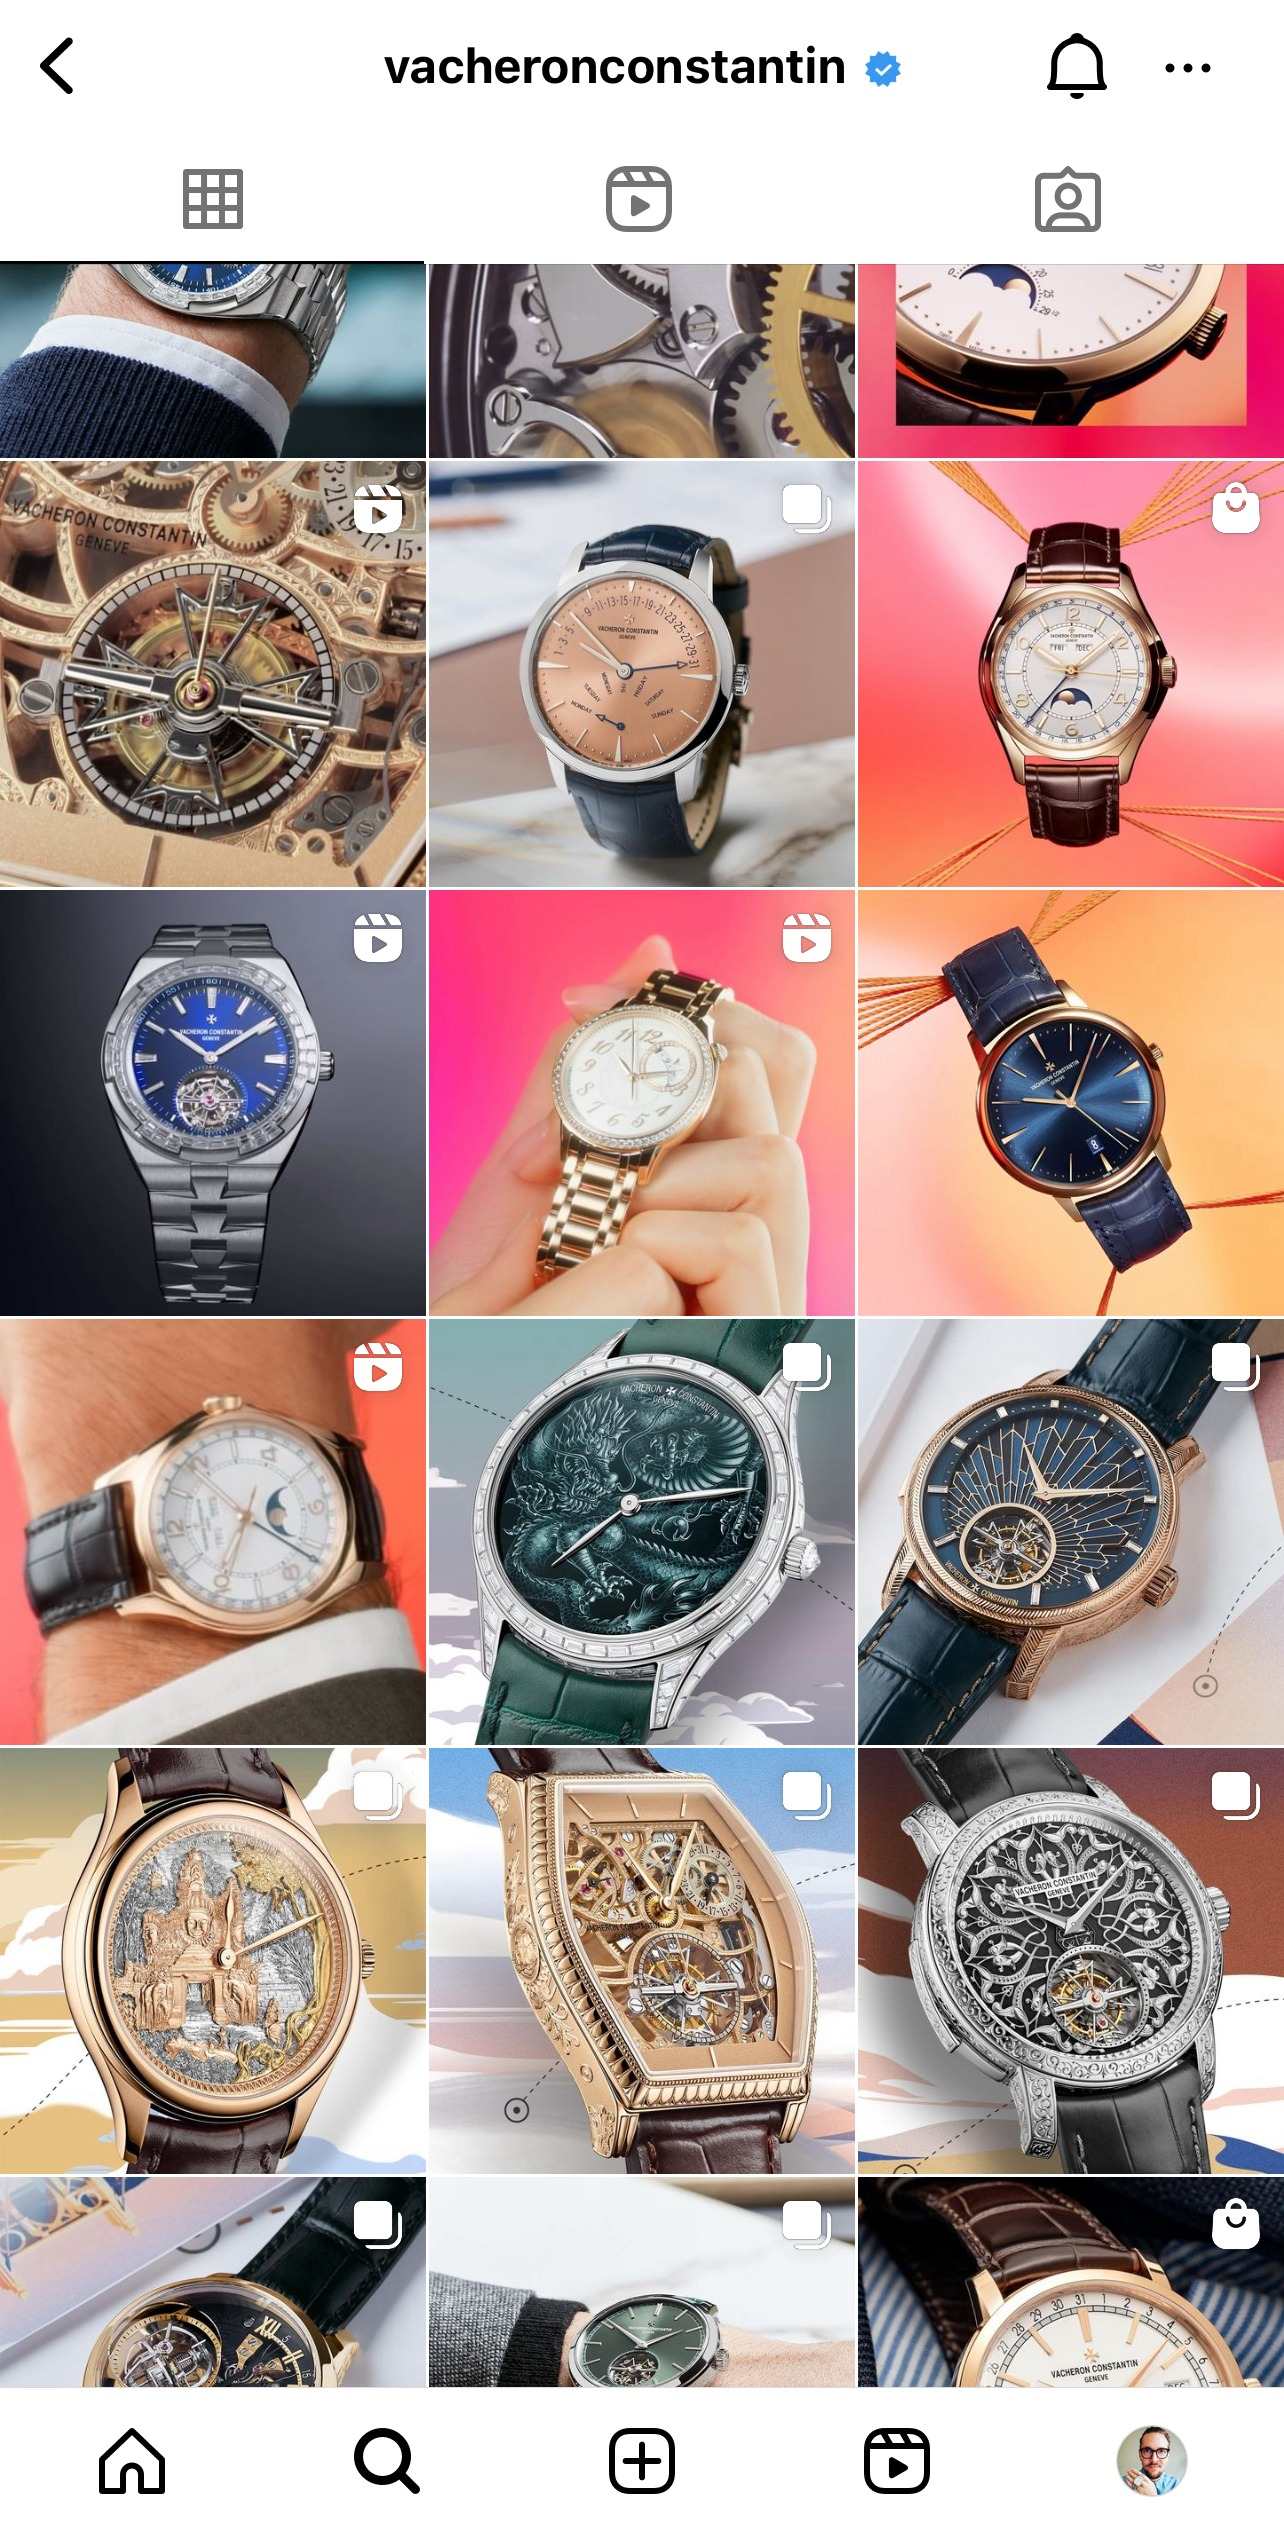 watch brands on Instagram Vacheron Constantin